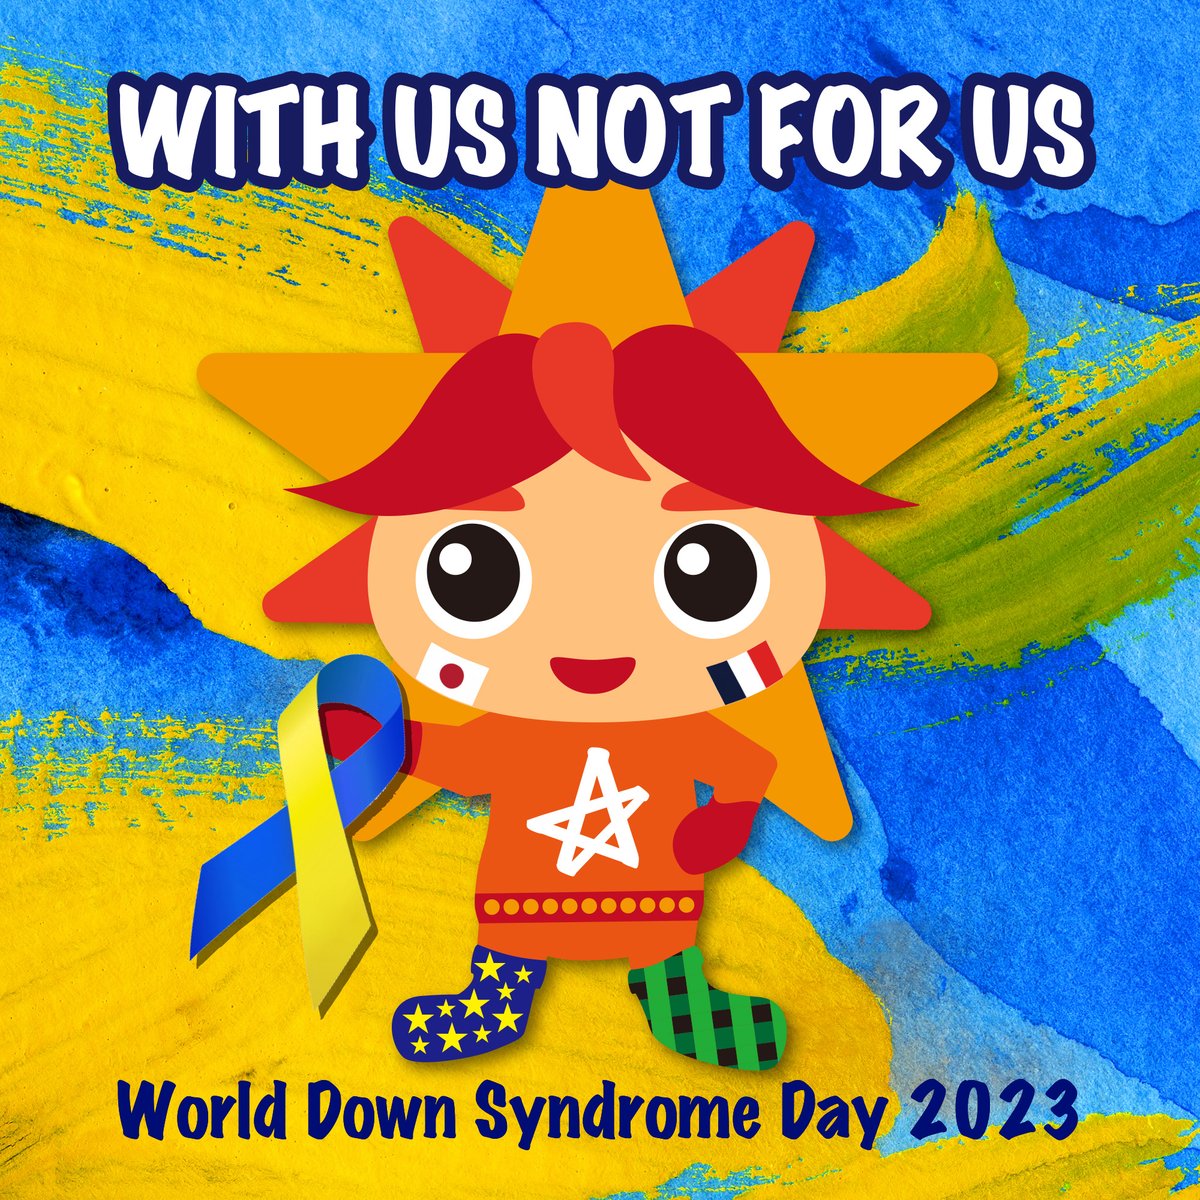 3月21日は #世界ダウン症の日 です！
#WDSD #WDSD23 #WDSD2023
#WorldDownSyndromeDay
#WithUsNotForUs
#WDSD2023japan
#世界ダウン症の日2023
#21トリソミー
#ダウン症